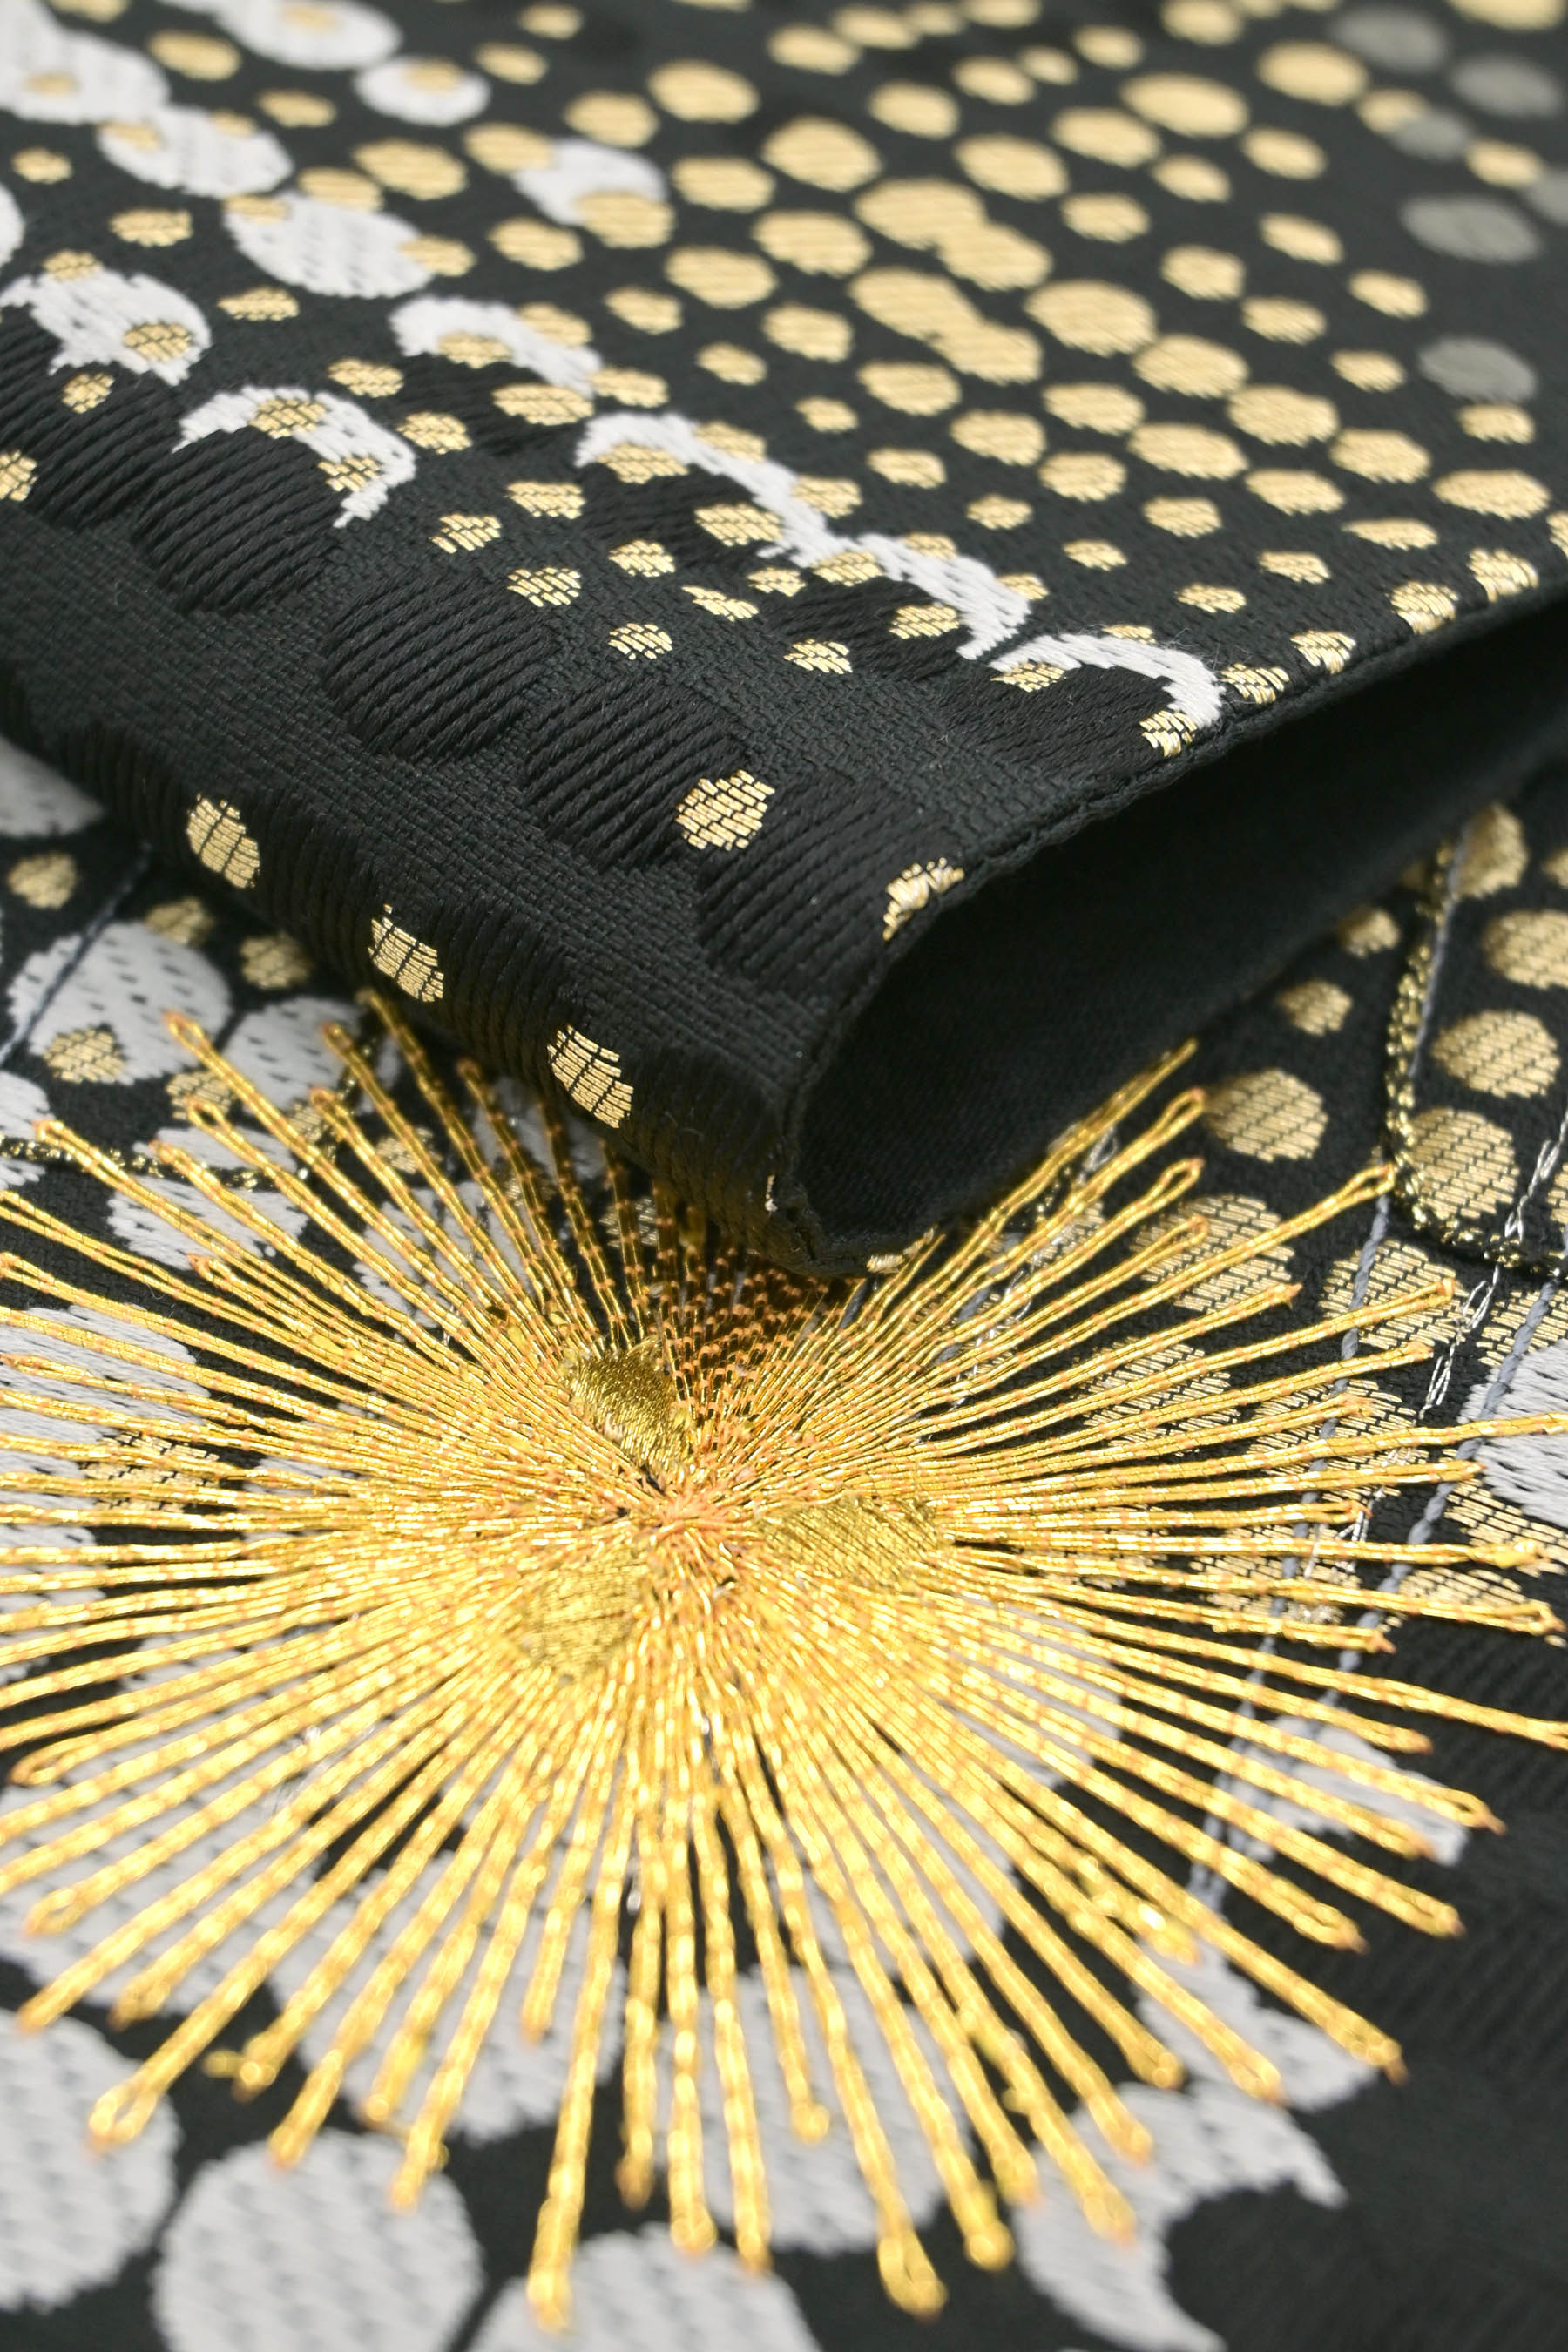 西陣織元】 特選西陣織袋帯 「アート・黒色」 洗練されたモダンな構図